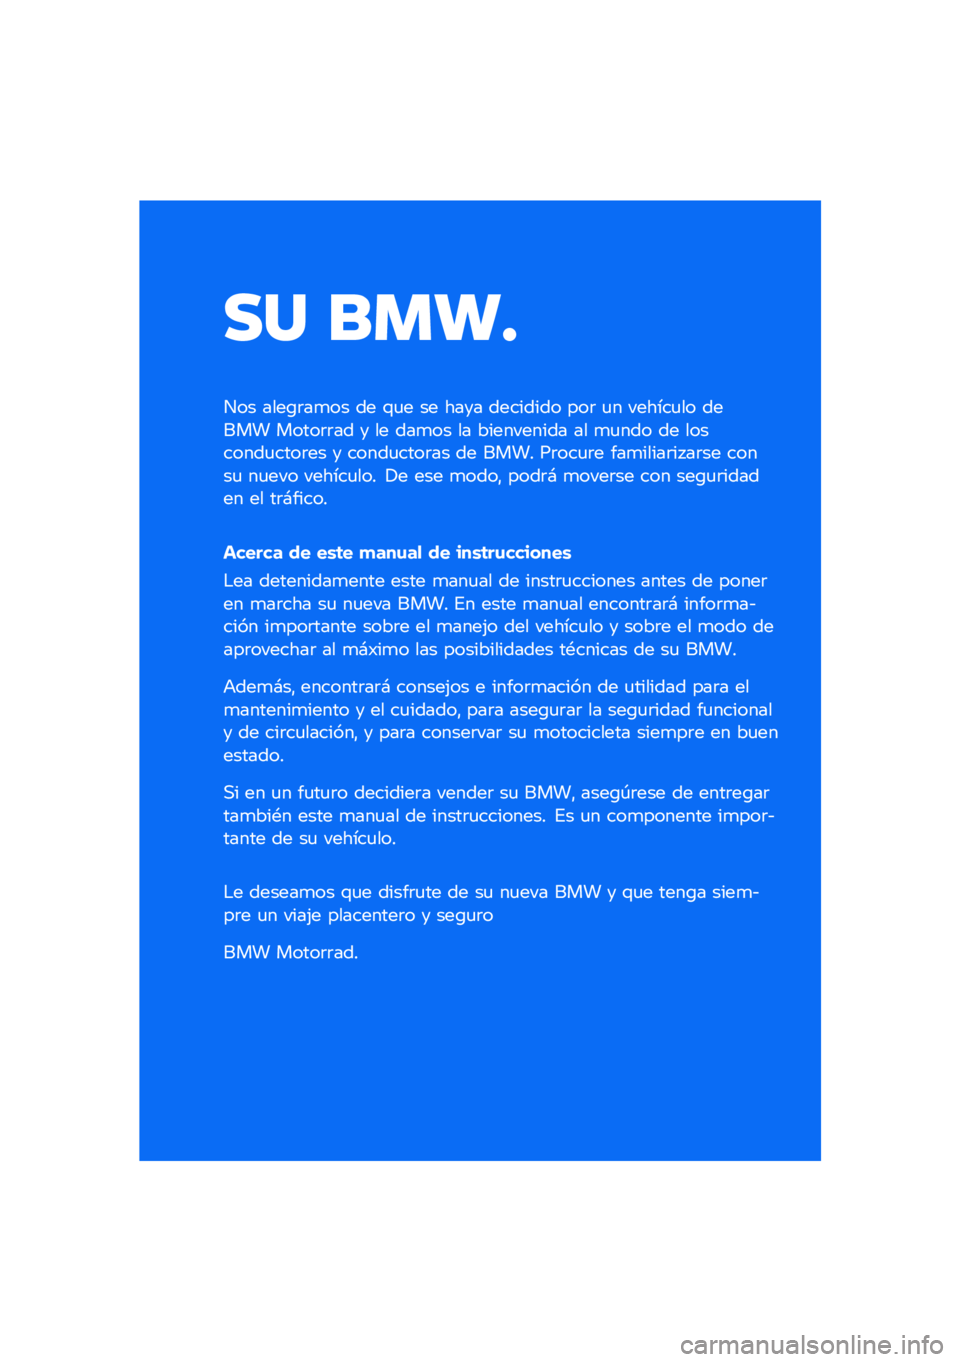 BMW MOTORRAD R NINE T SCRAMBLER 2020  Manual de instrucciones (in Spanish) �� ����
��� ����\b�	��
�� �� �\f�
� �� ���� �������� ���	 �
� ������
�� ����� �����	�	�� � �� ���
�� �� ���������� �� �
�
��